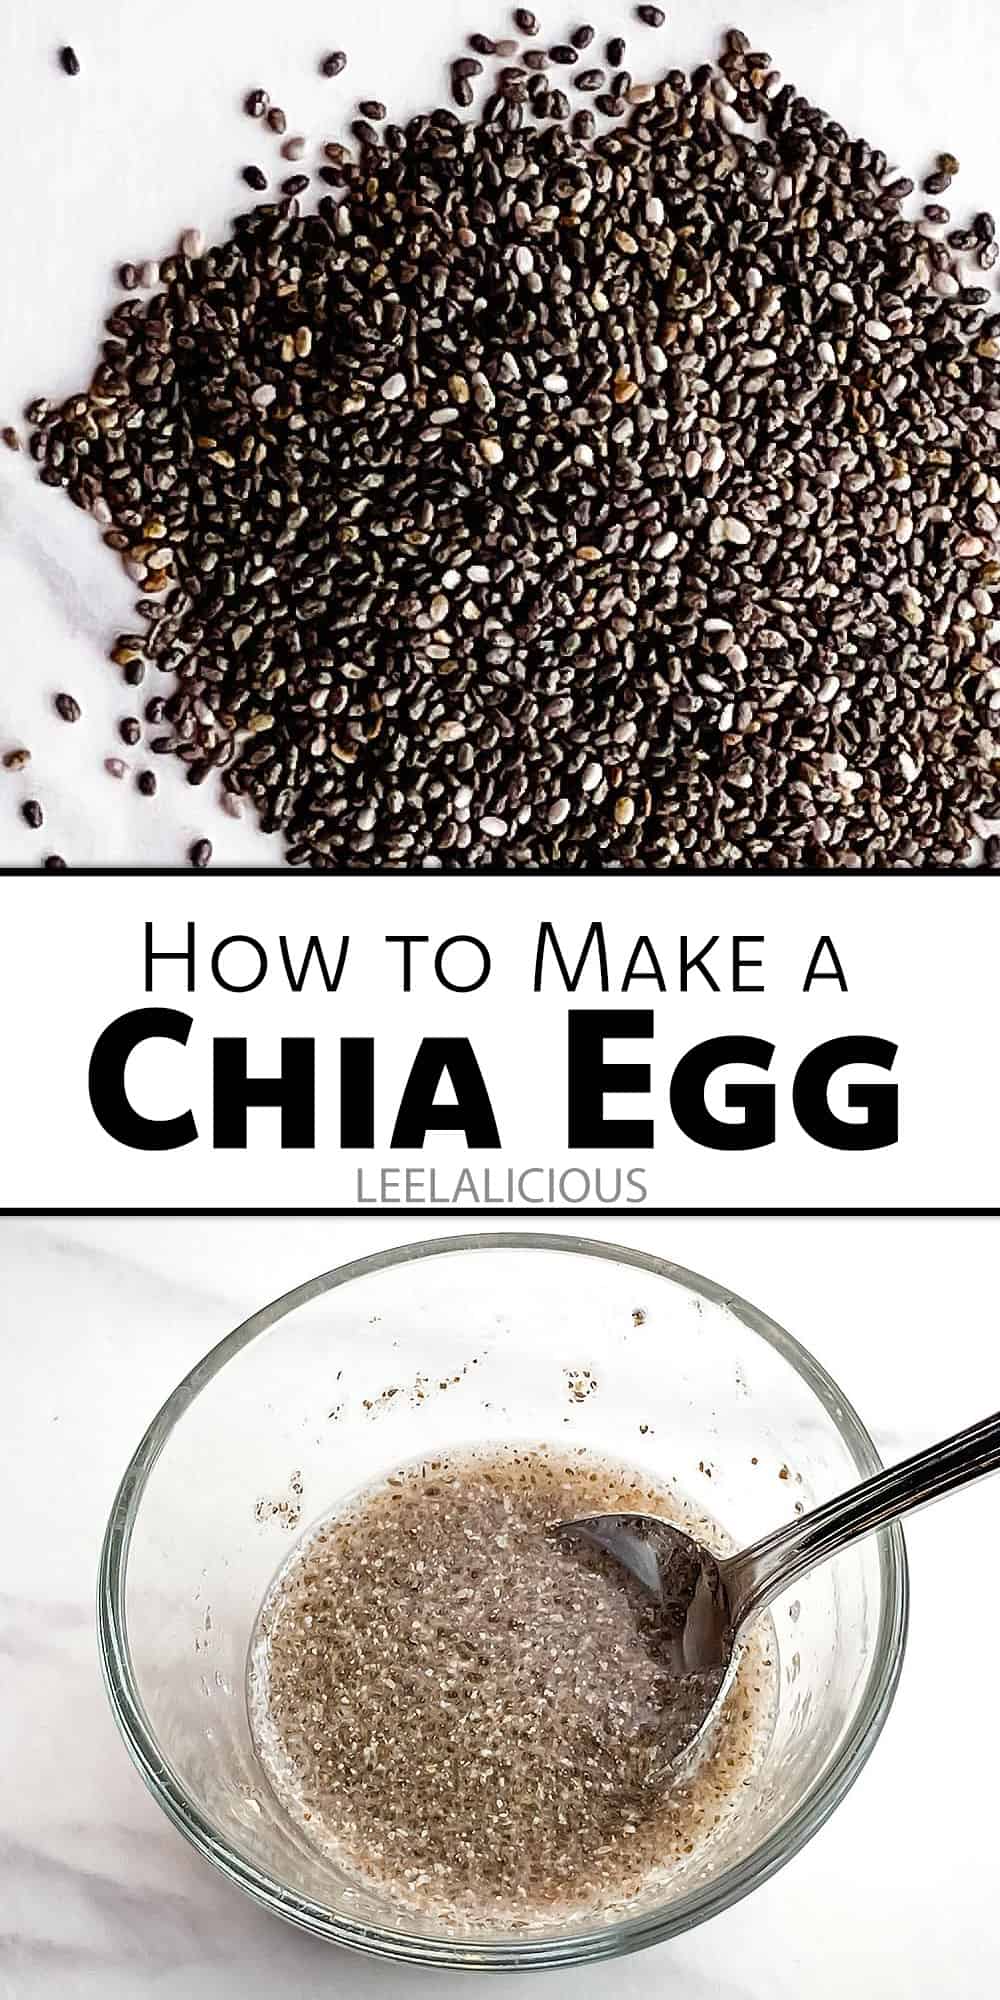 Make a Chia Egg